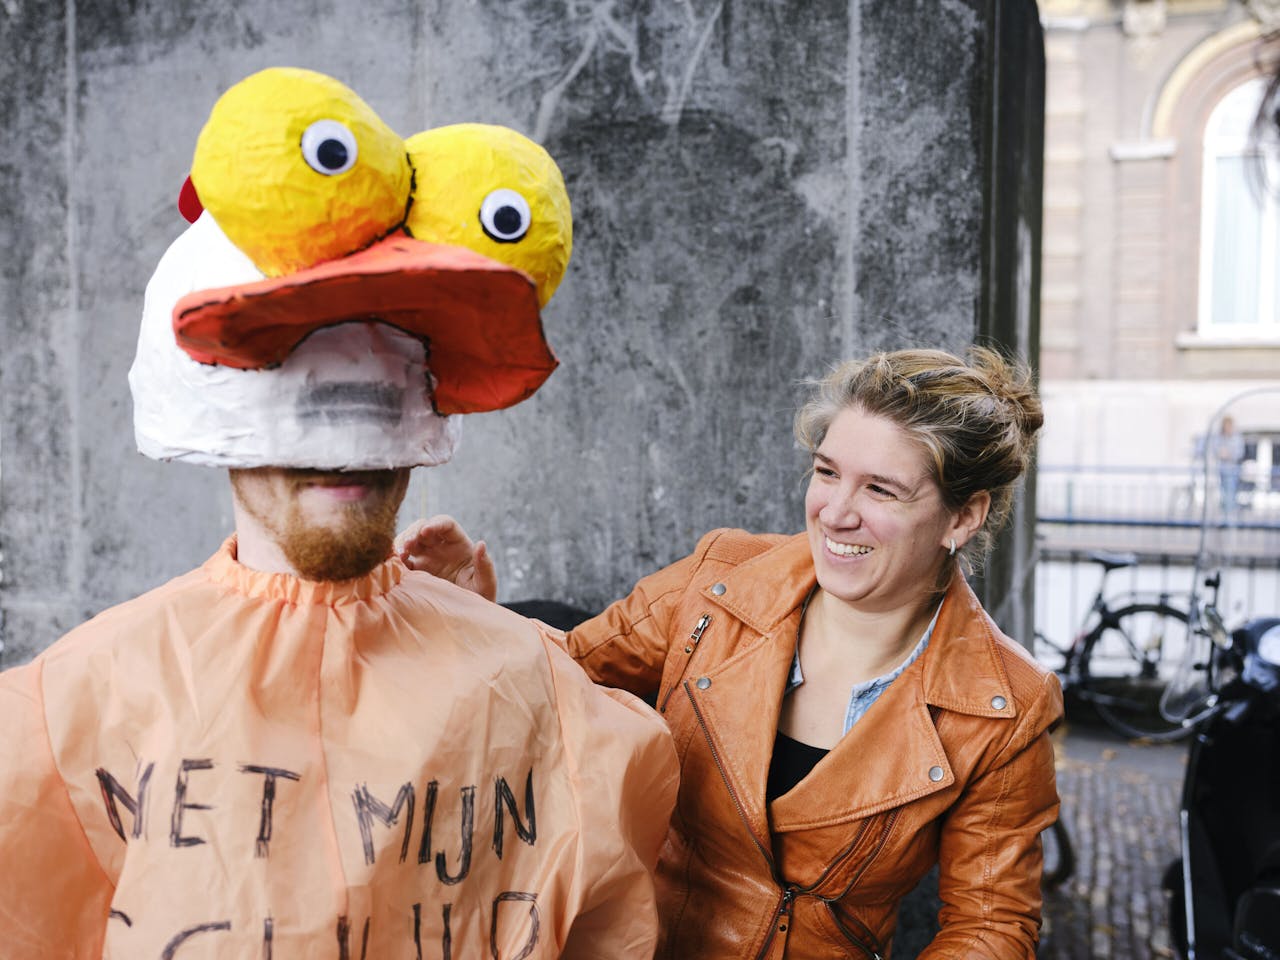 Mirte Cofino van vakbond FNV voert actie met een ‘geplukte kip’ op het Plein in Den Haag. De campagne wordt als voorbeeld gezien van een moderne manier van actievoeren, die ook nog eens gericht is op jongeren.